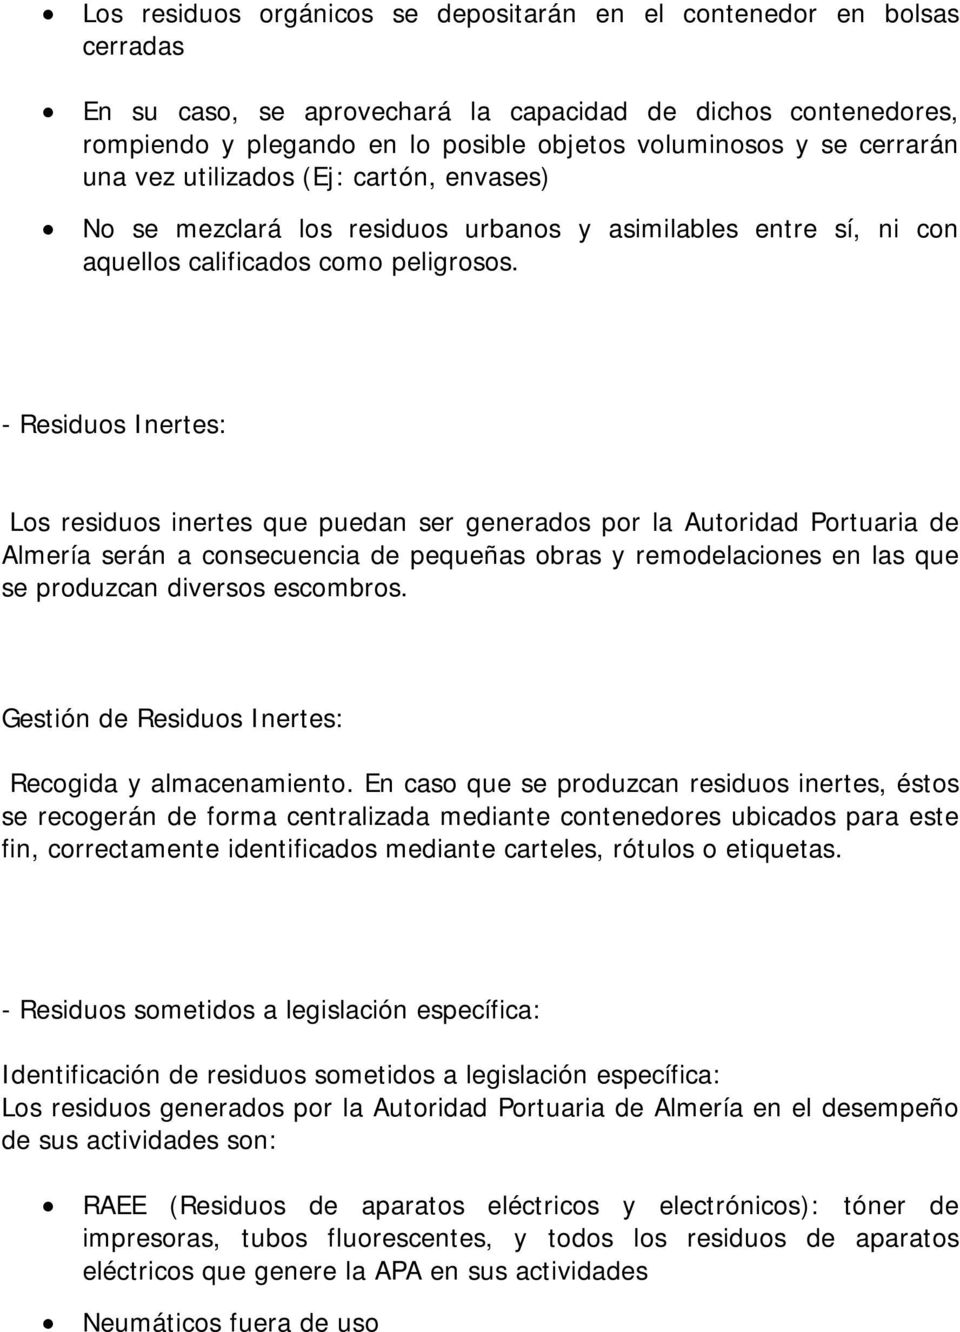 - Residuos Inertes: Los residuos inertes que puedan ser generados por la Autoridad Portuaria de Almería serán a consecuencia de pequeñas obras y remodelaciones en las que se produzcan diversos